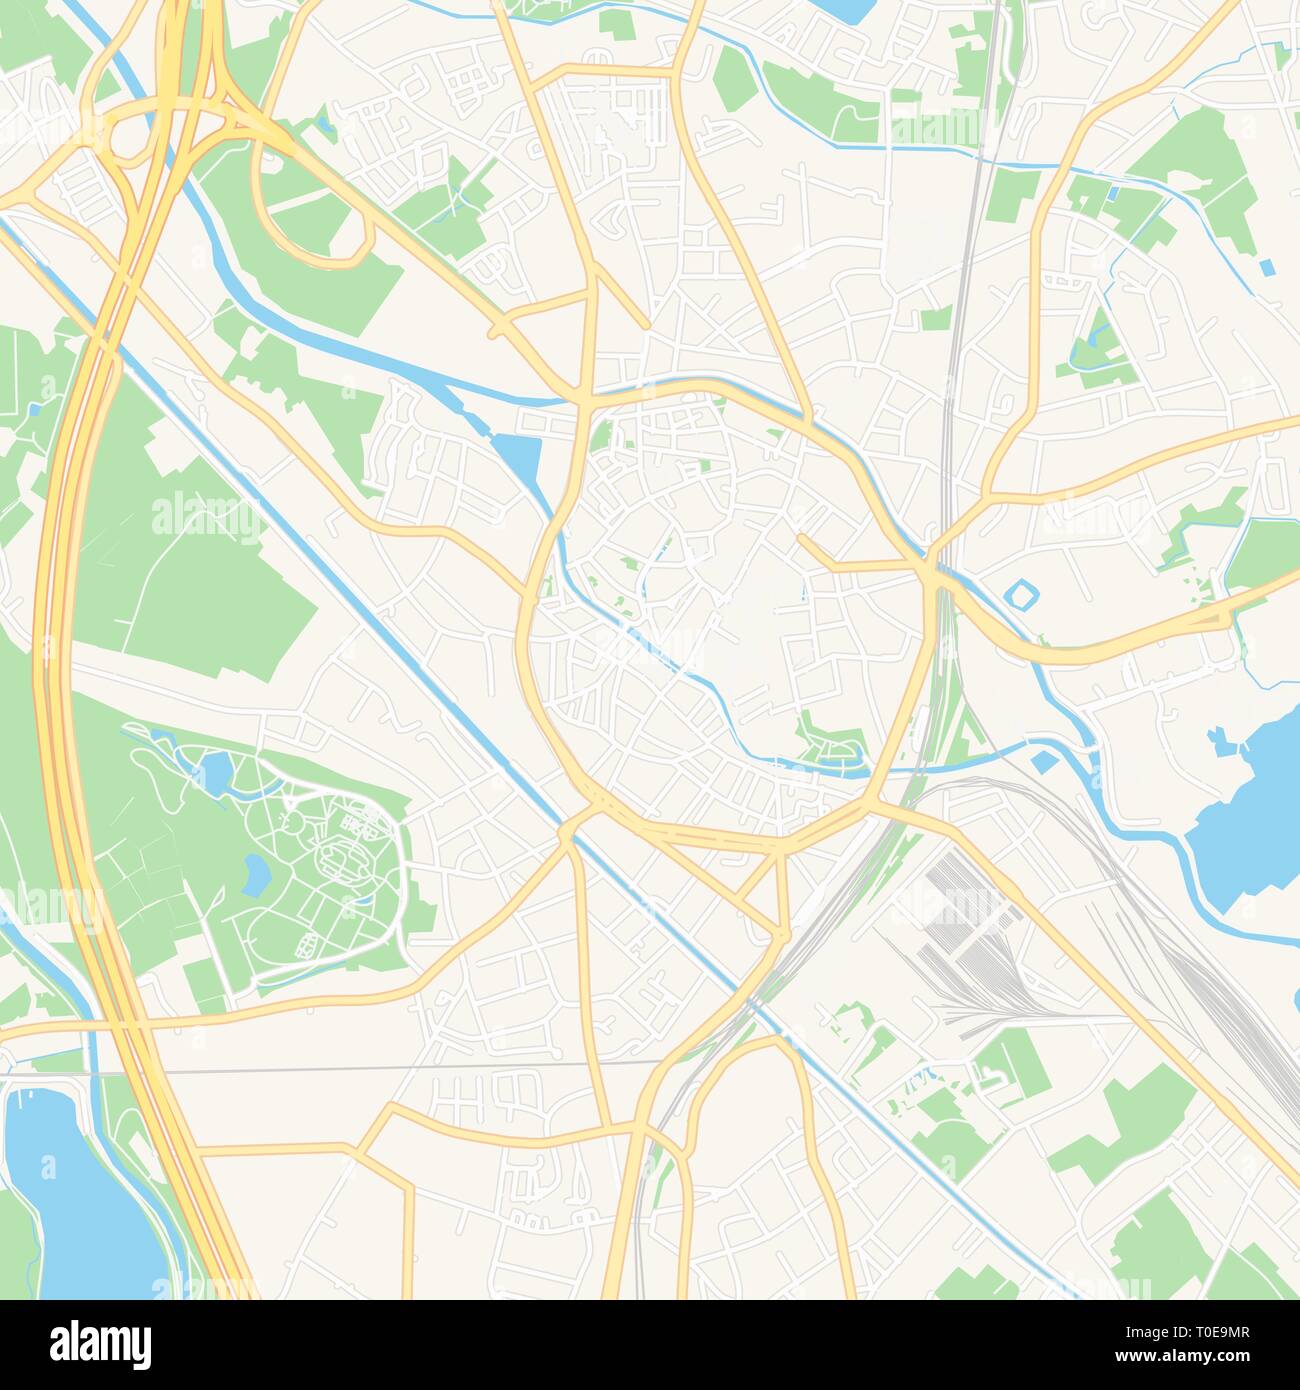 Druckbare Karte von Mechelen, Belgien mit Haupt- und Nebenstraßen und größere Bahnen. Diese Karte ist sorgfältig für Routing und Inverkehrbringen Champagnerkelch konzipiert Stock Vektor